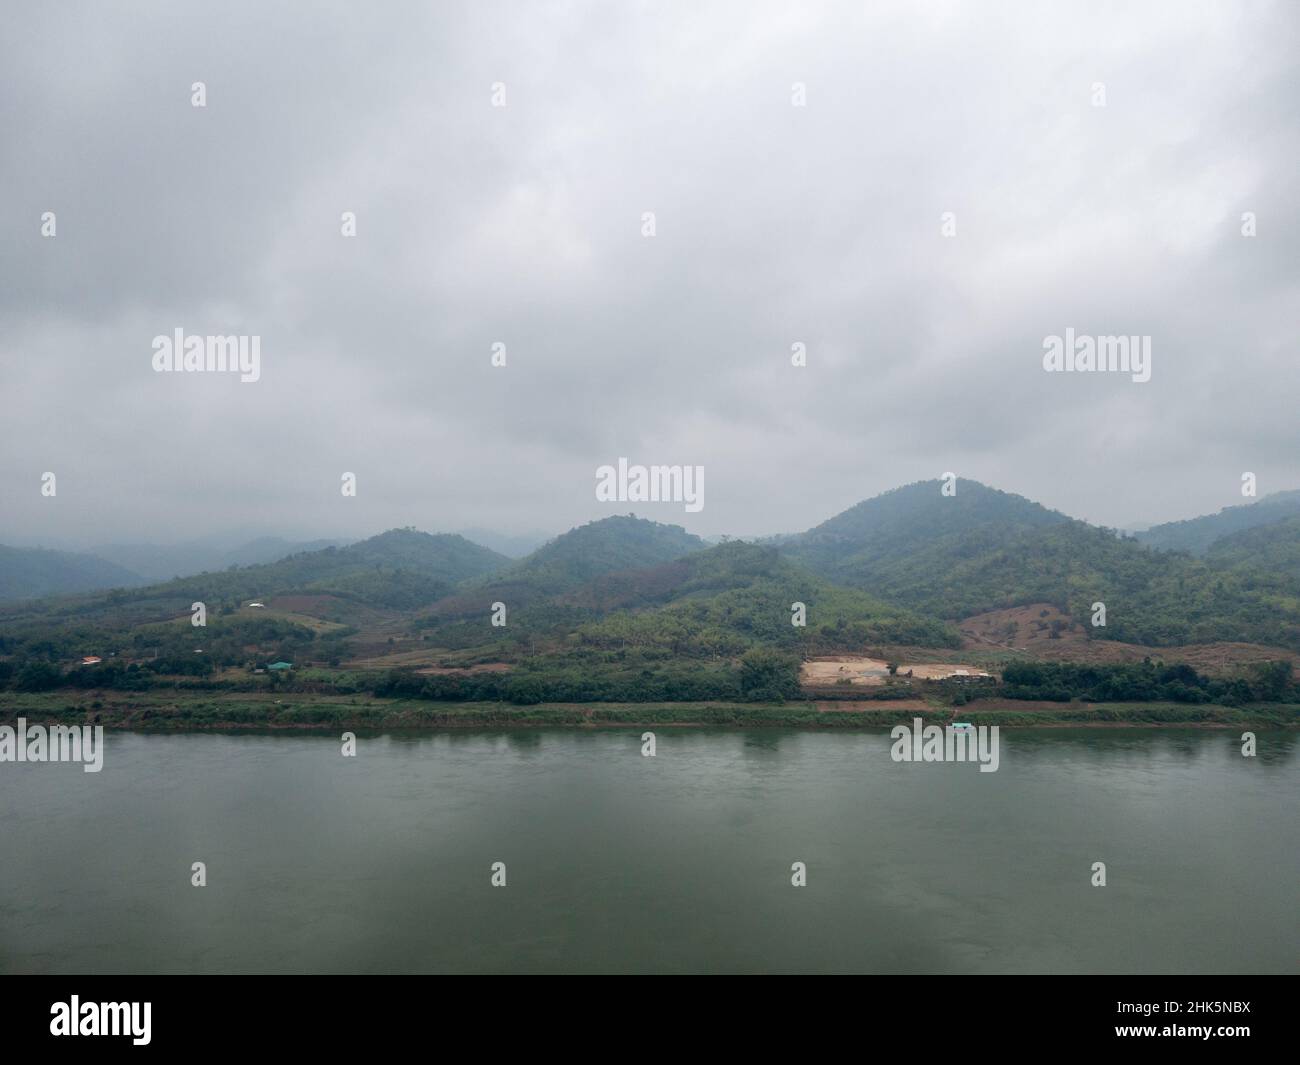 La chaîne de montagnes est couverte de nuages près de la grande rivière après la pluie dans la partie nord-est de la Thaïlande, vue de face avec l'espace copie. Banque D'Images